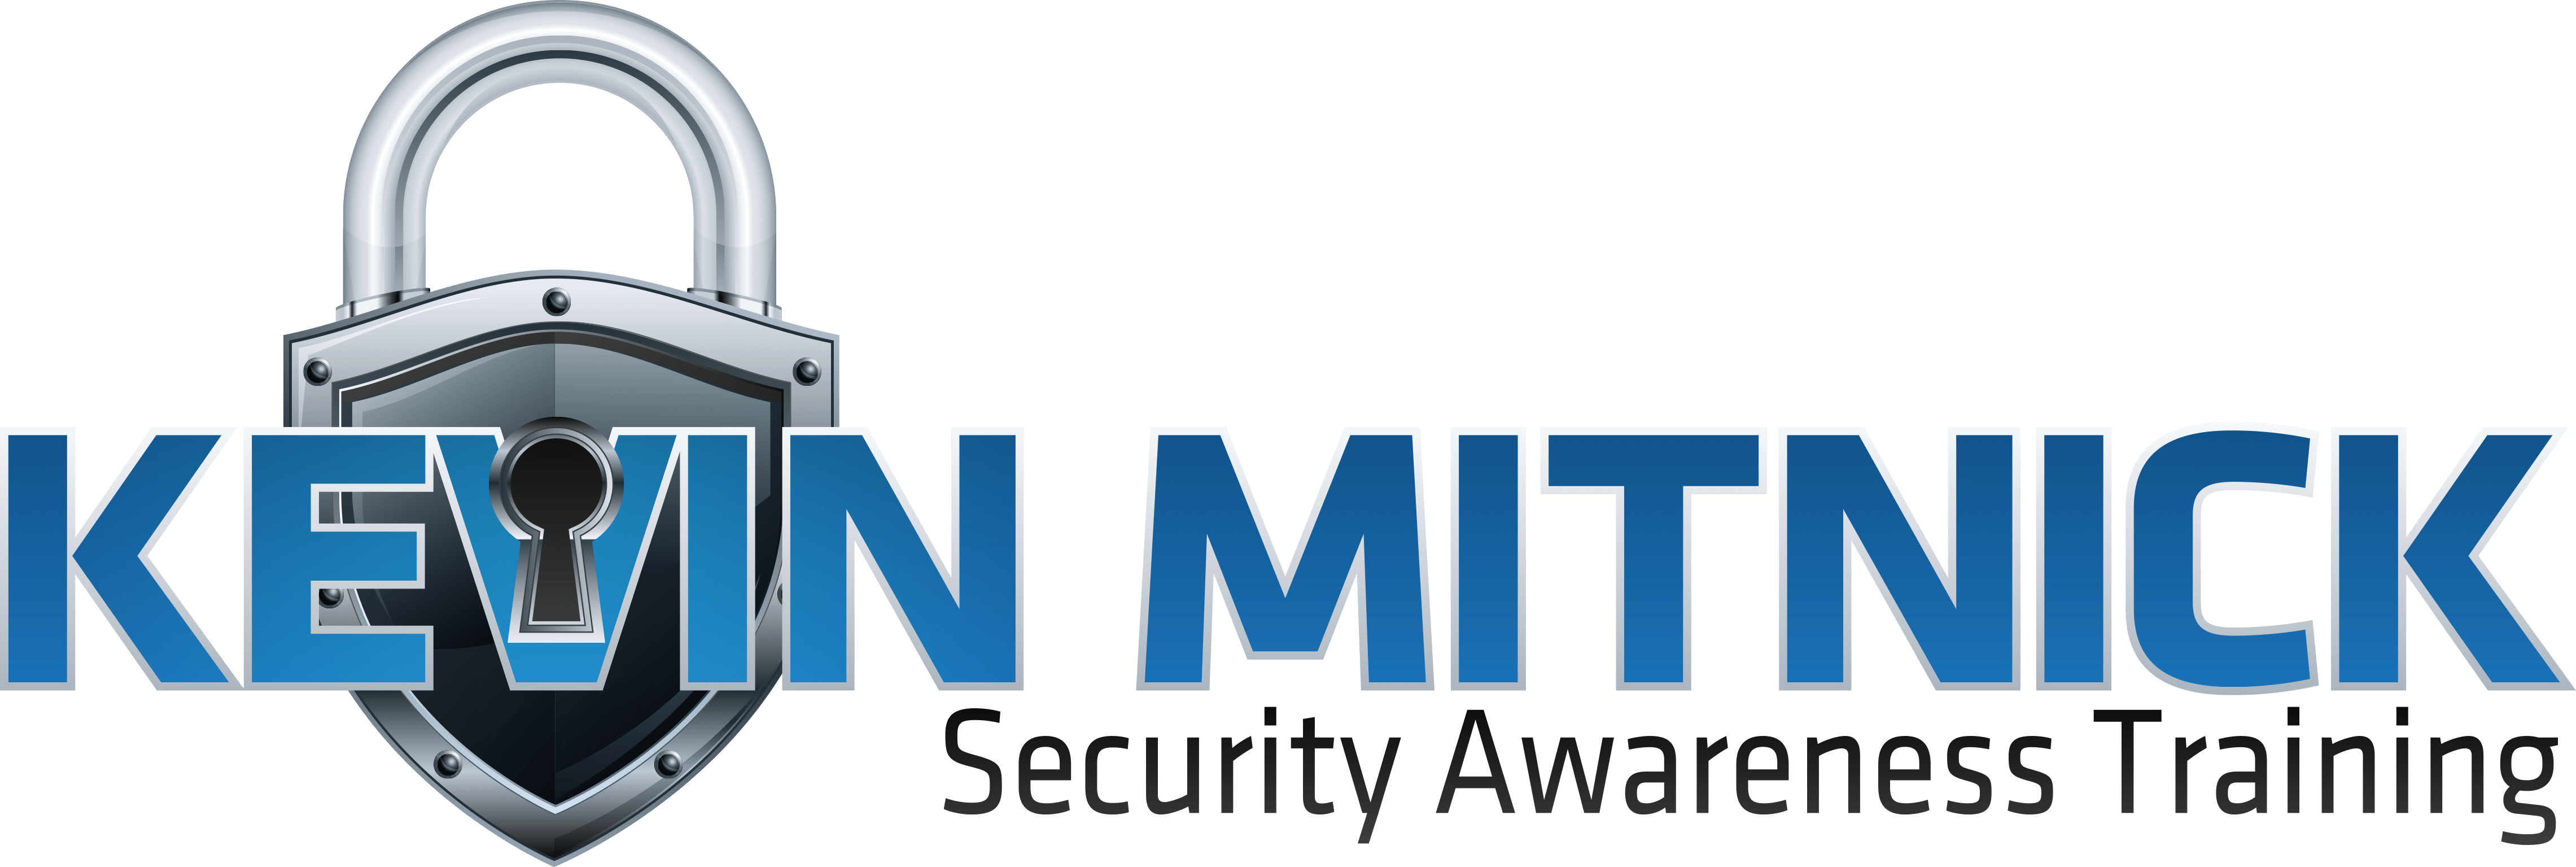 Kevin Mitnick el hacker más temido (y respetado) Emprender Fácil